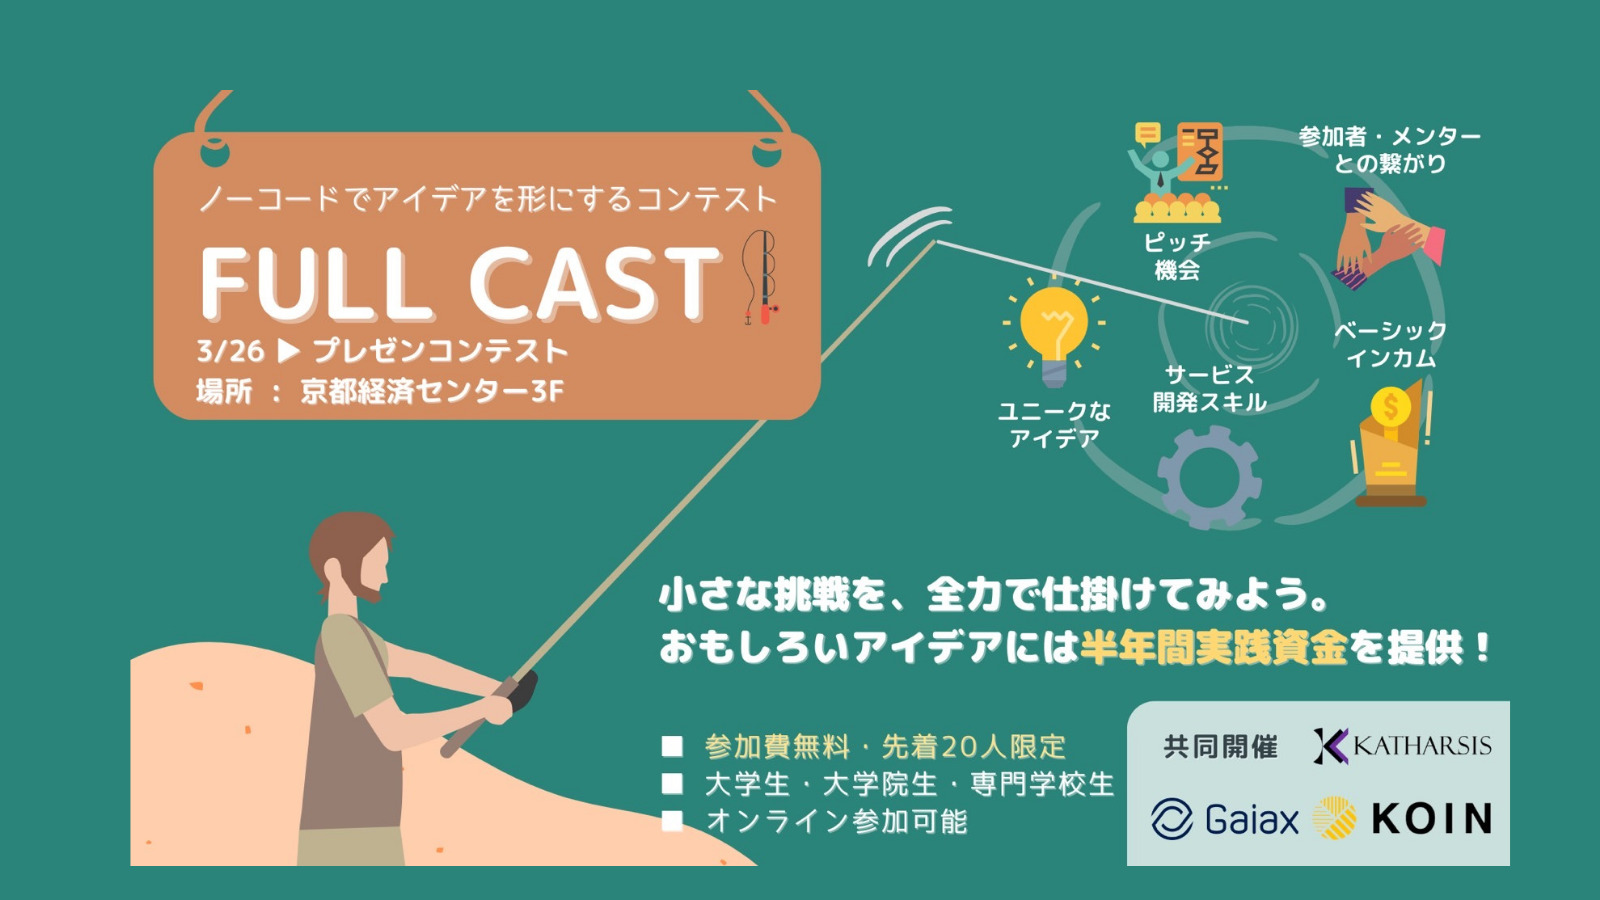 【学生対象】FULL CAST ～ノーコードでアイデアを形にするコンテスト～